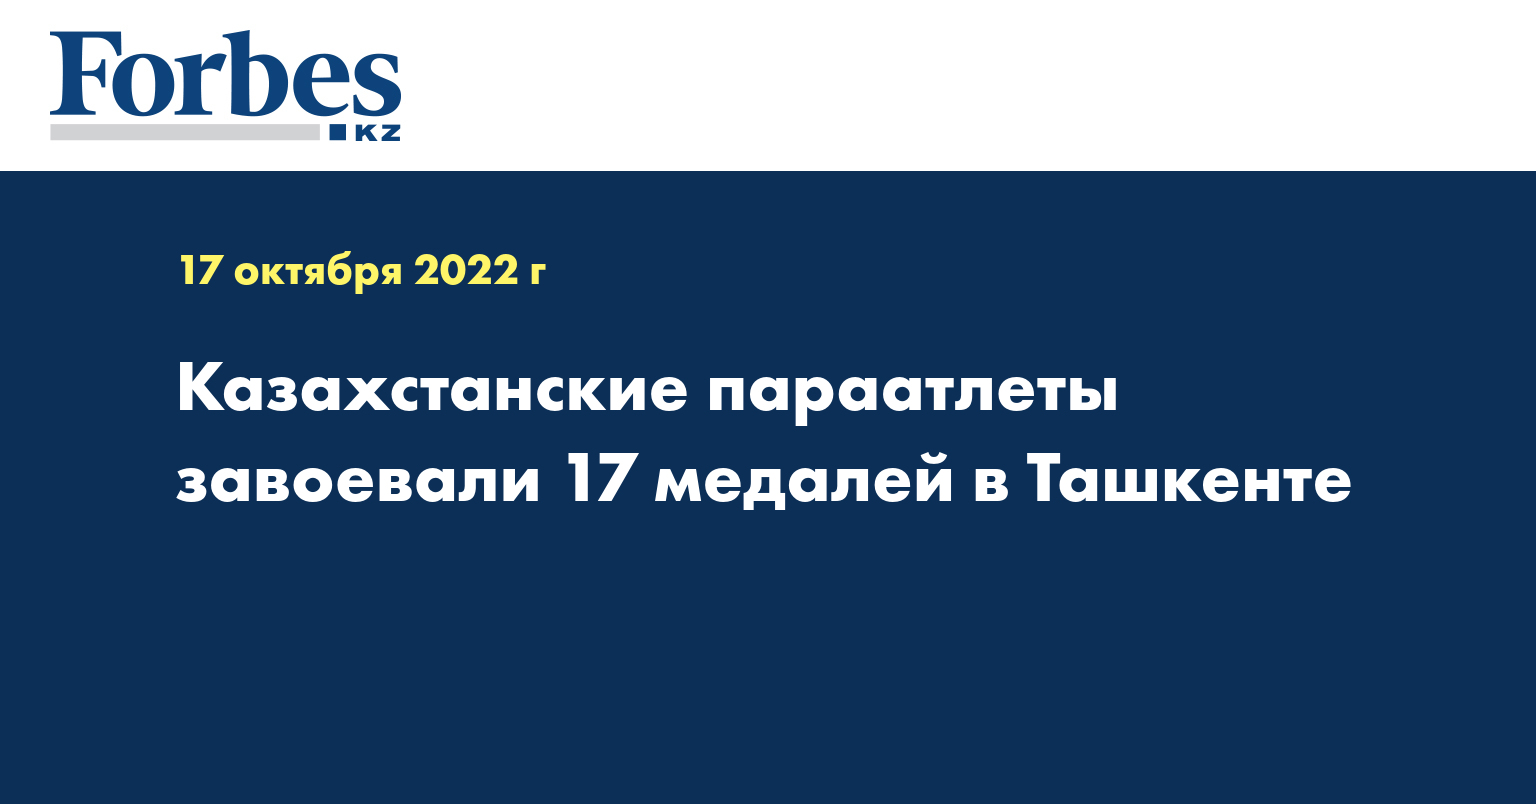 Казахстанские параатлеты завоевали 17 медалей в Ташкенте